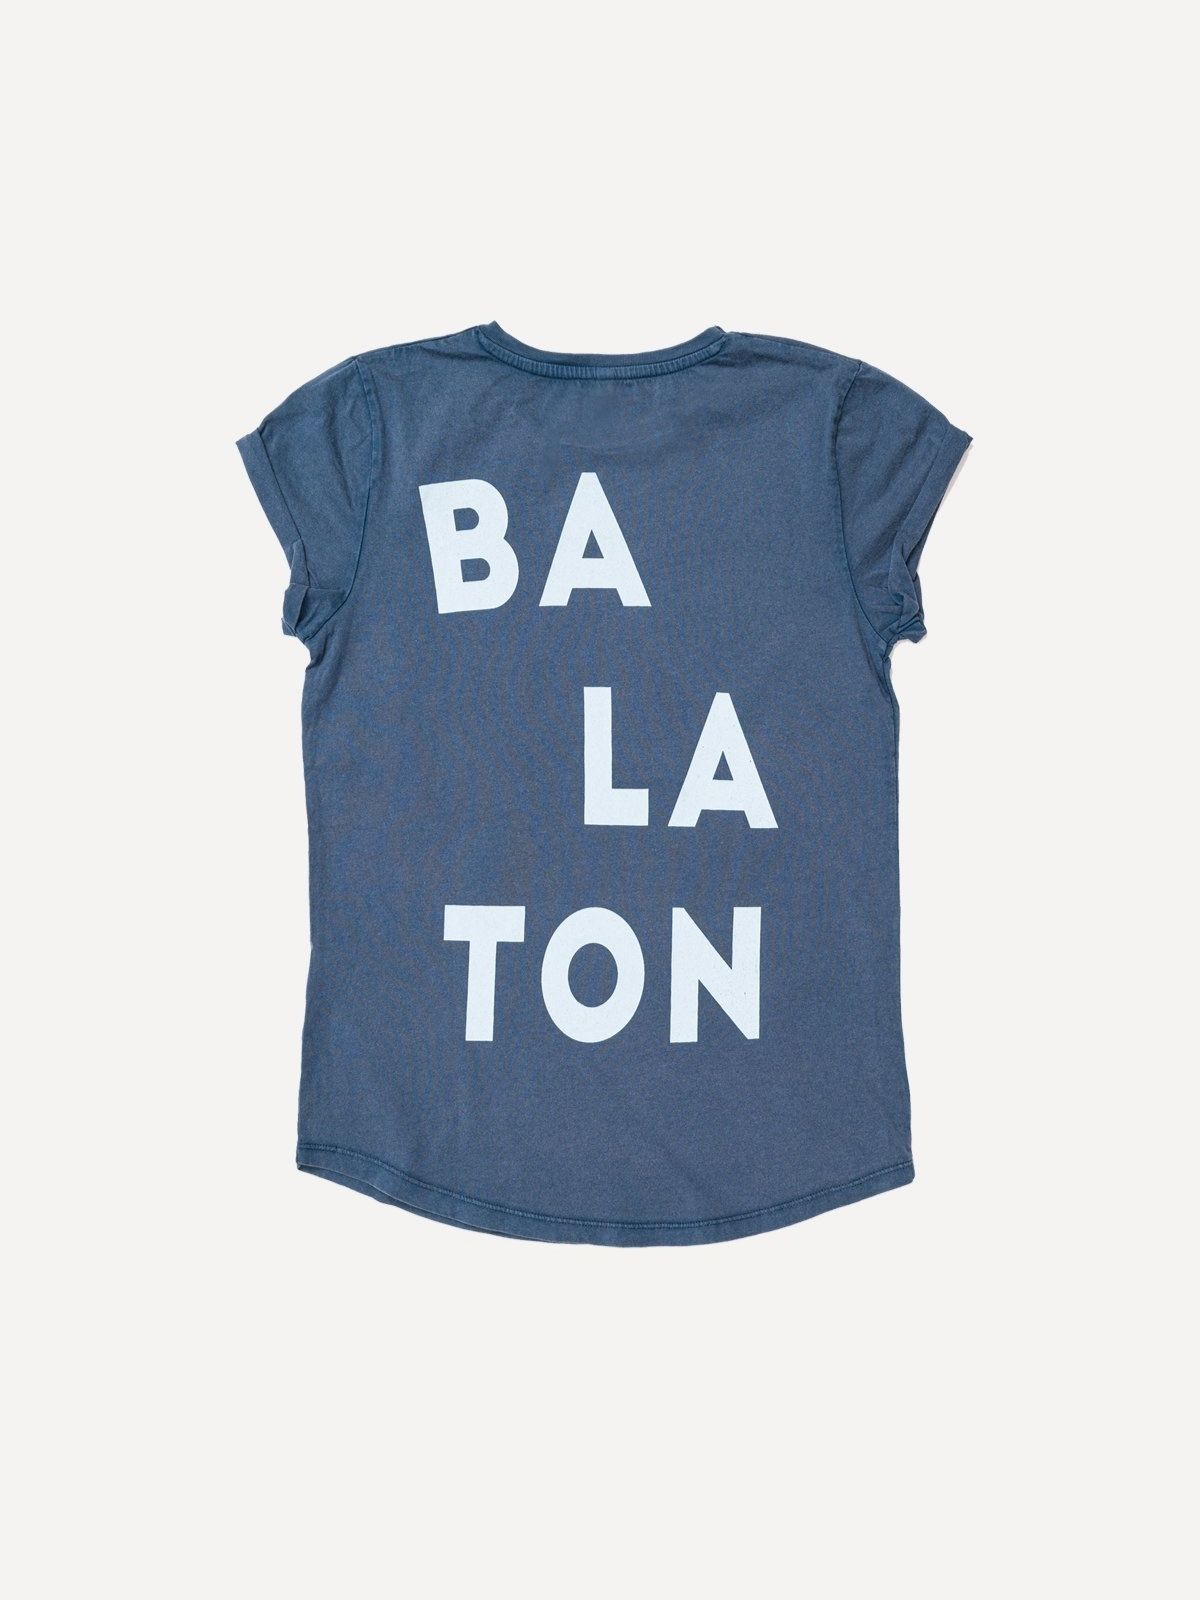 Blue women's t-shirt with Balaton pattern